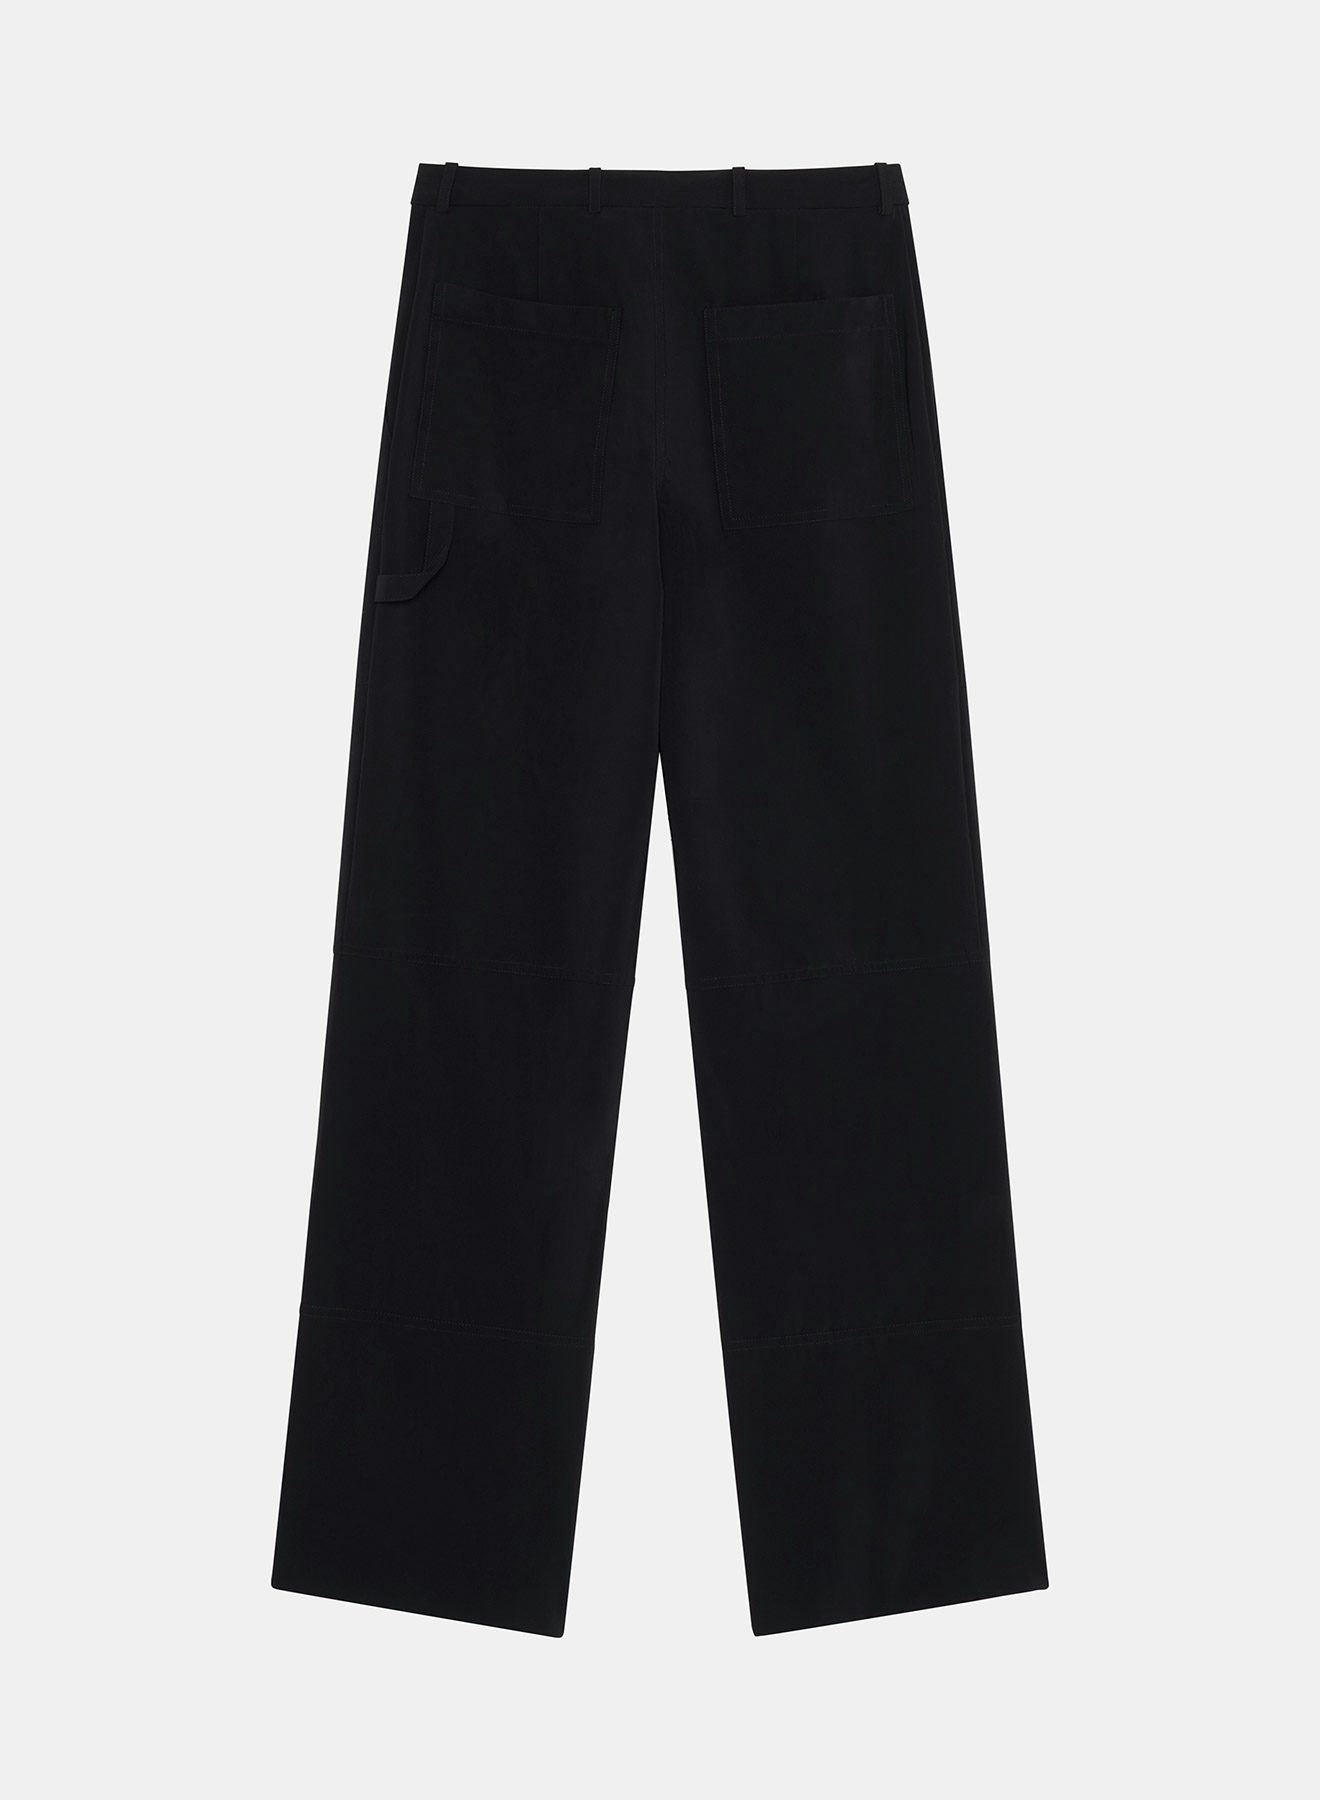 Black cargo pants in light neoprene - Nina Ricci